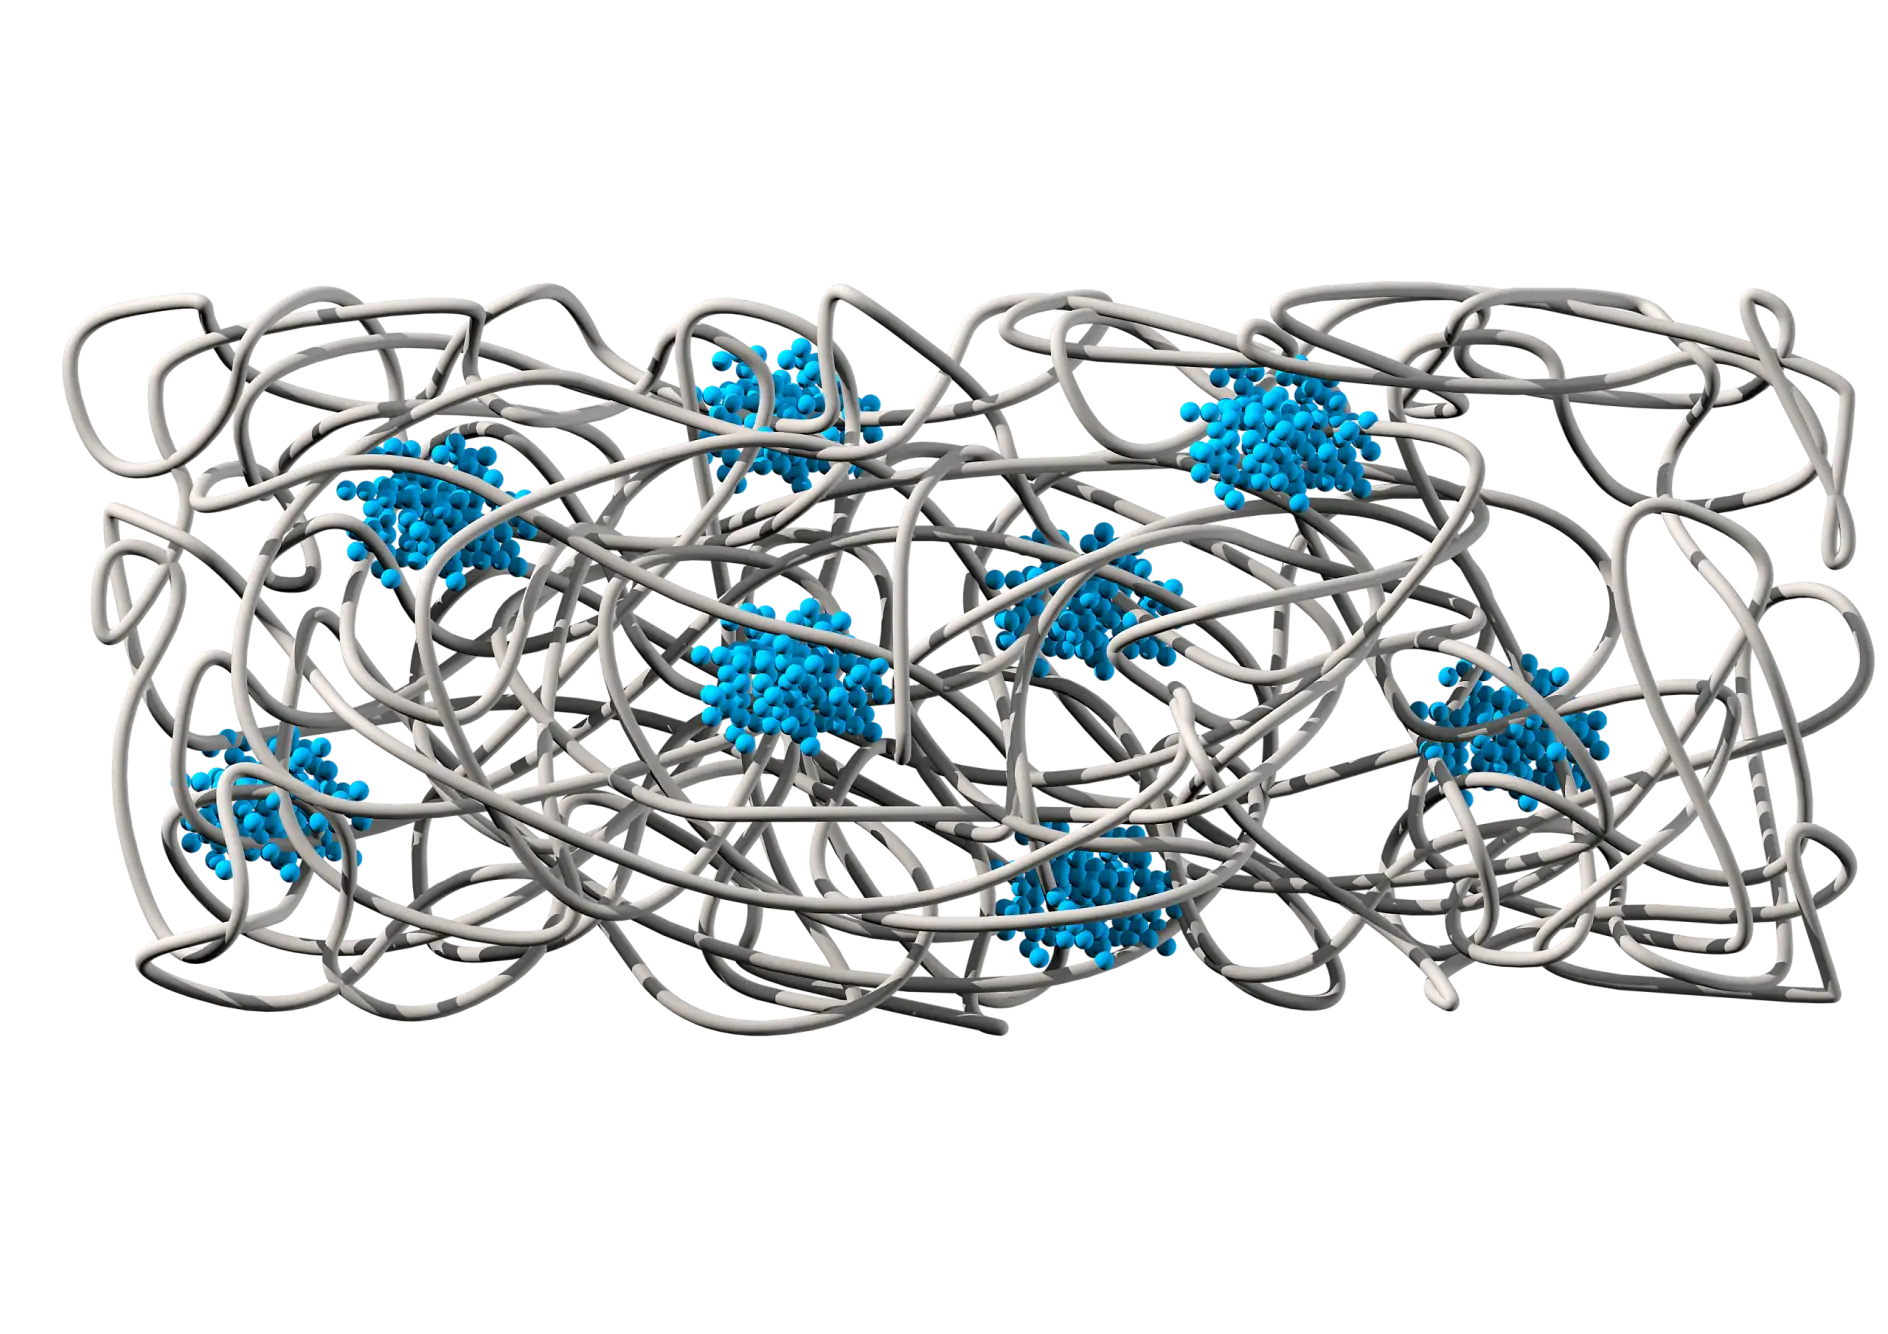 A kémiai szerkezet egy (szürke) gumimasszának látszik, ami tapadást és rugalmasságot biztosít. A polisztiroltartományok (kék) pedig kohéziót és tépésállóságot biztosítanak.